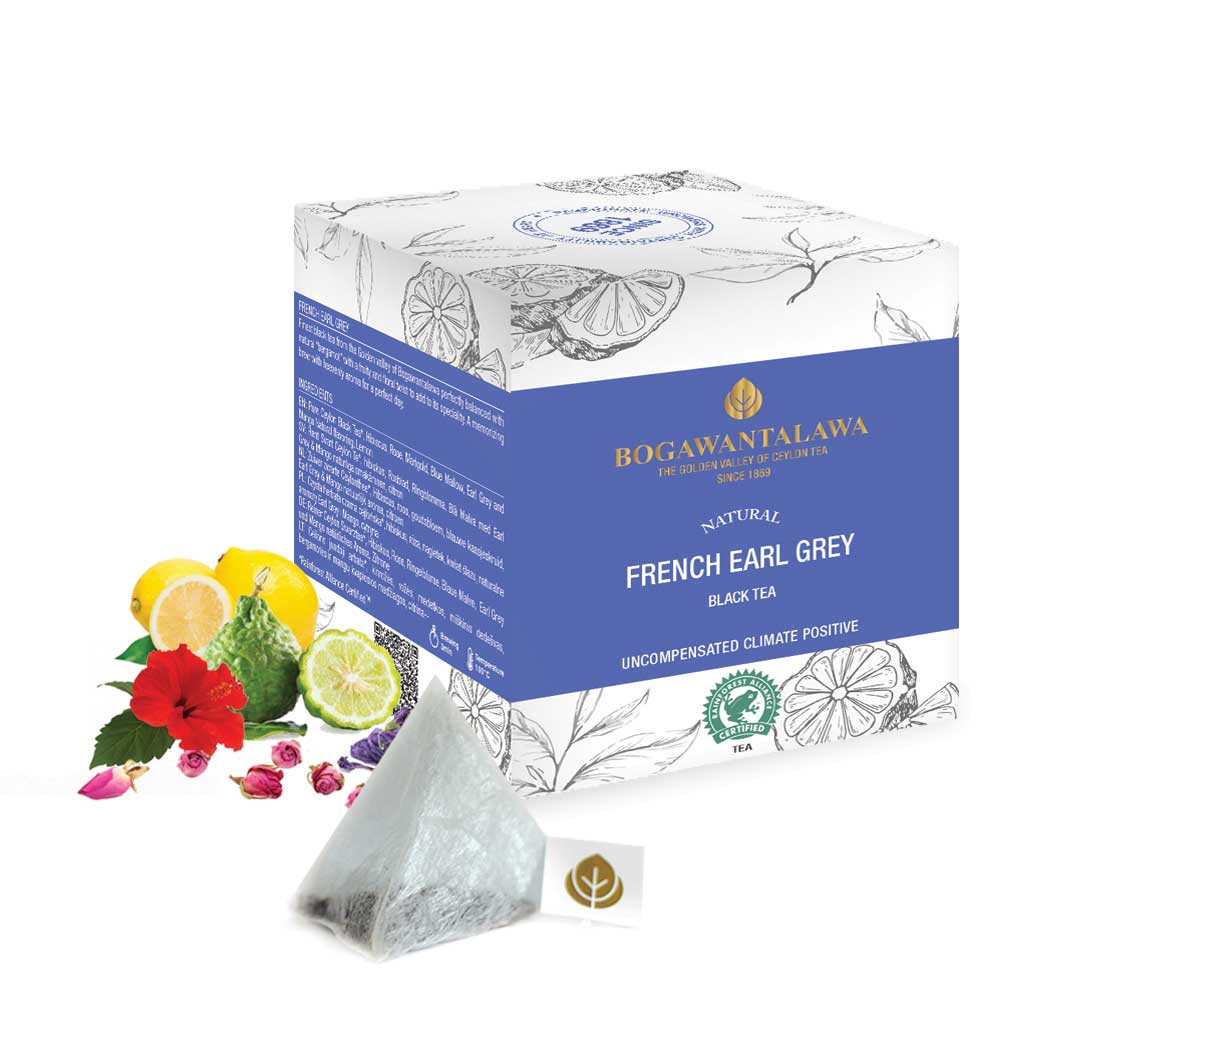 Bogawantalawa All-Natural French Earl Grey 2g x 20 Pyramid Tea Bags